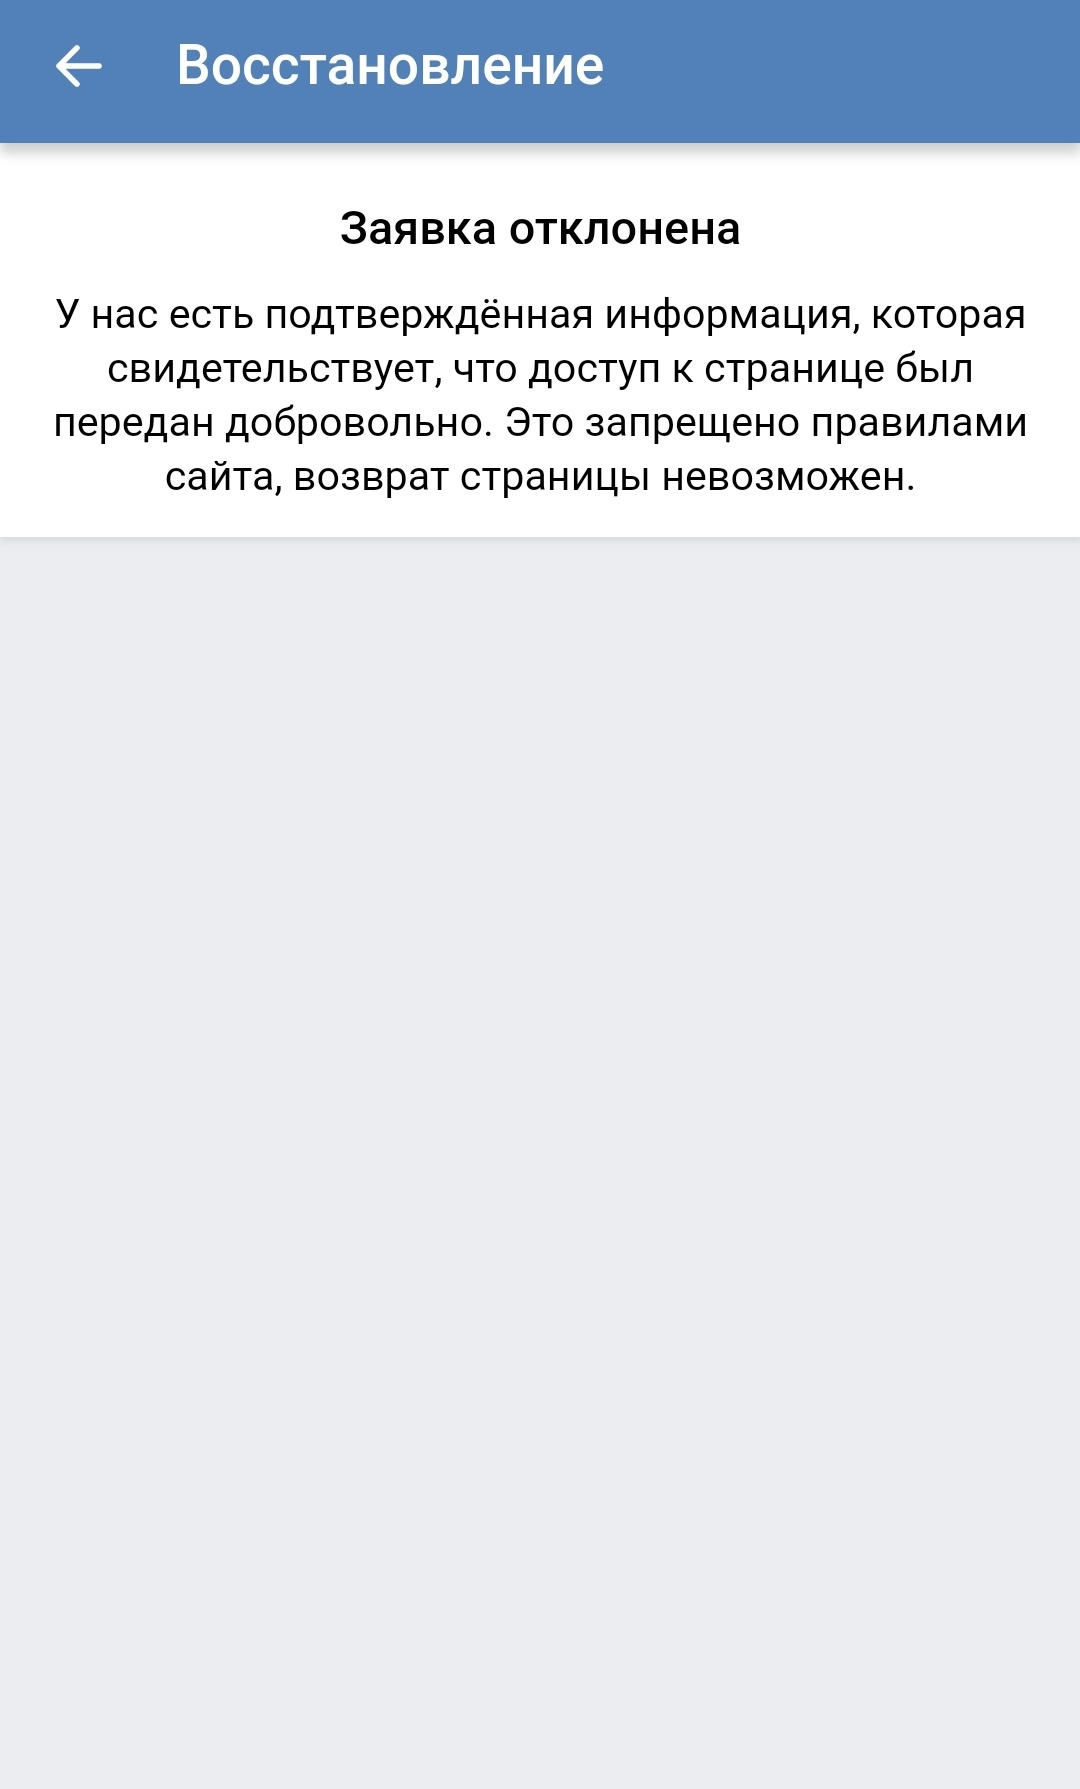 Как можно восстановить доступ к странице ВКонтакте?